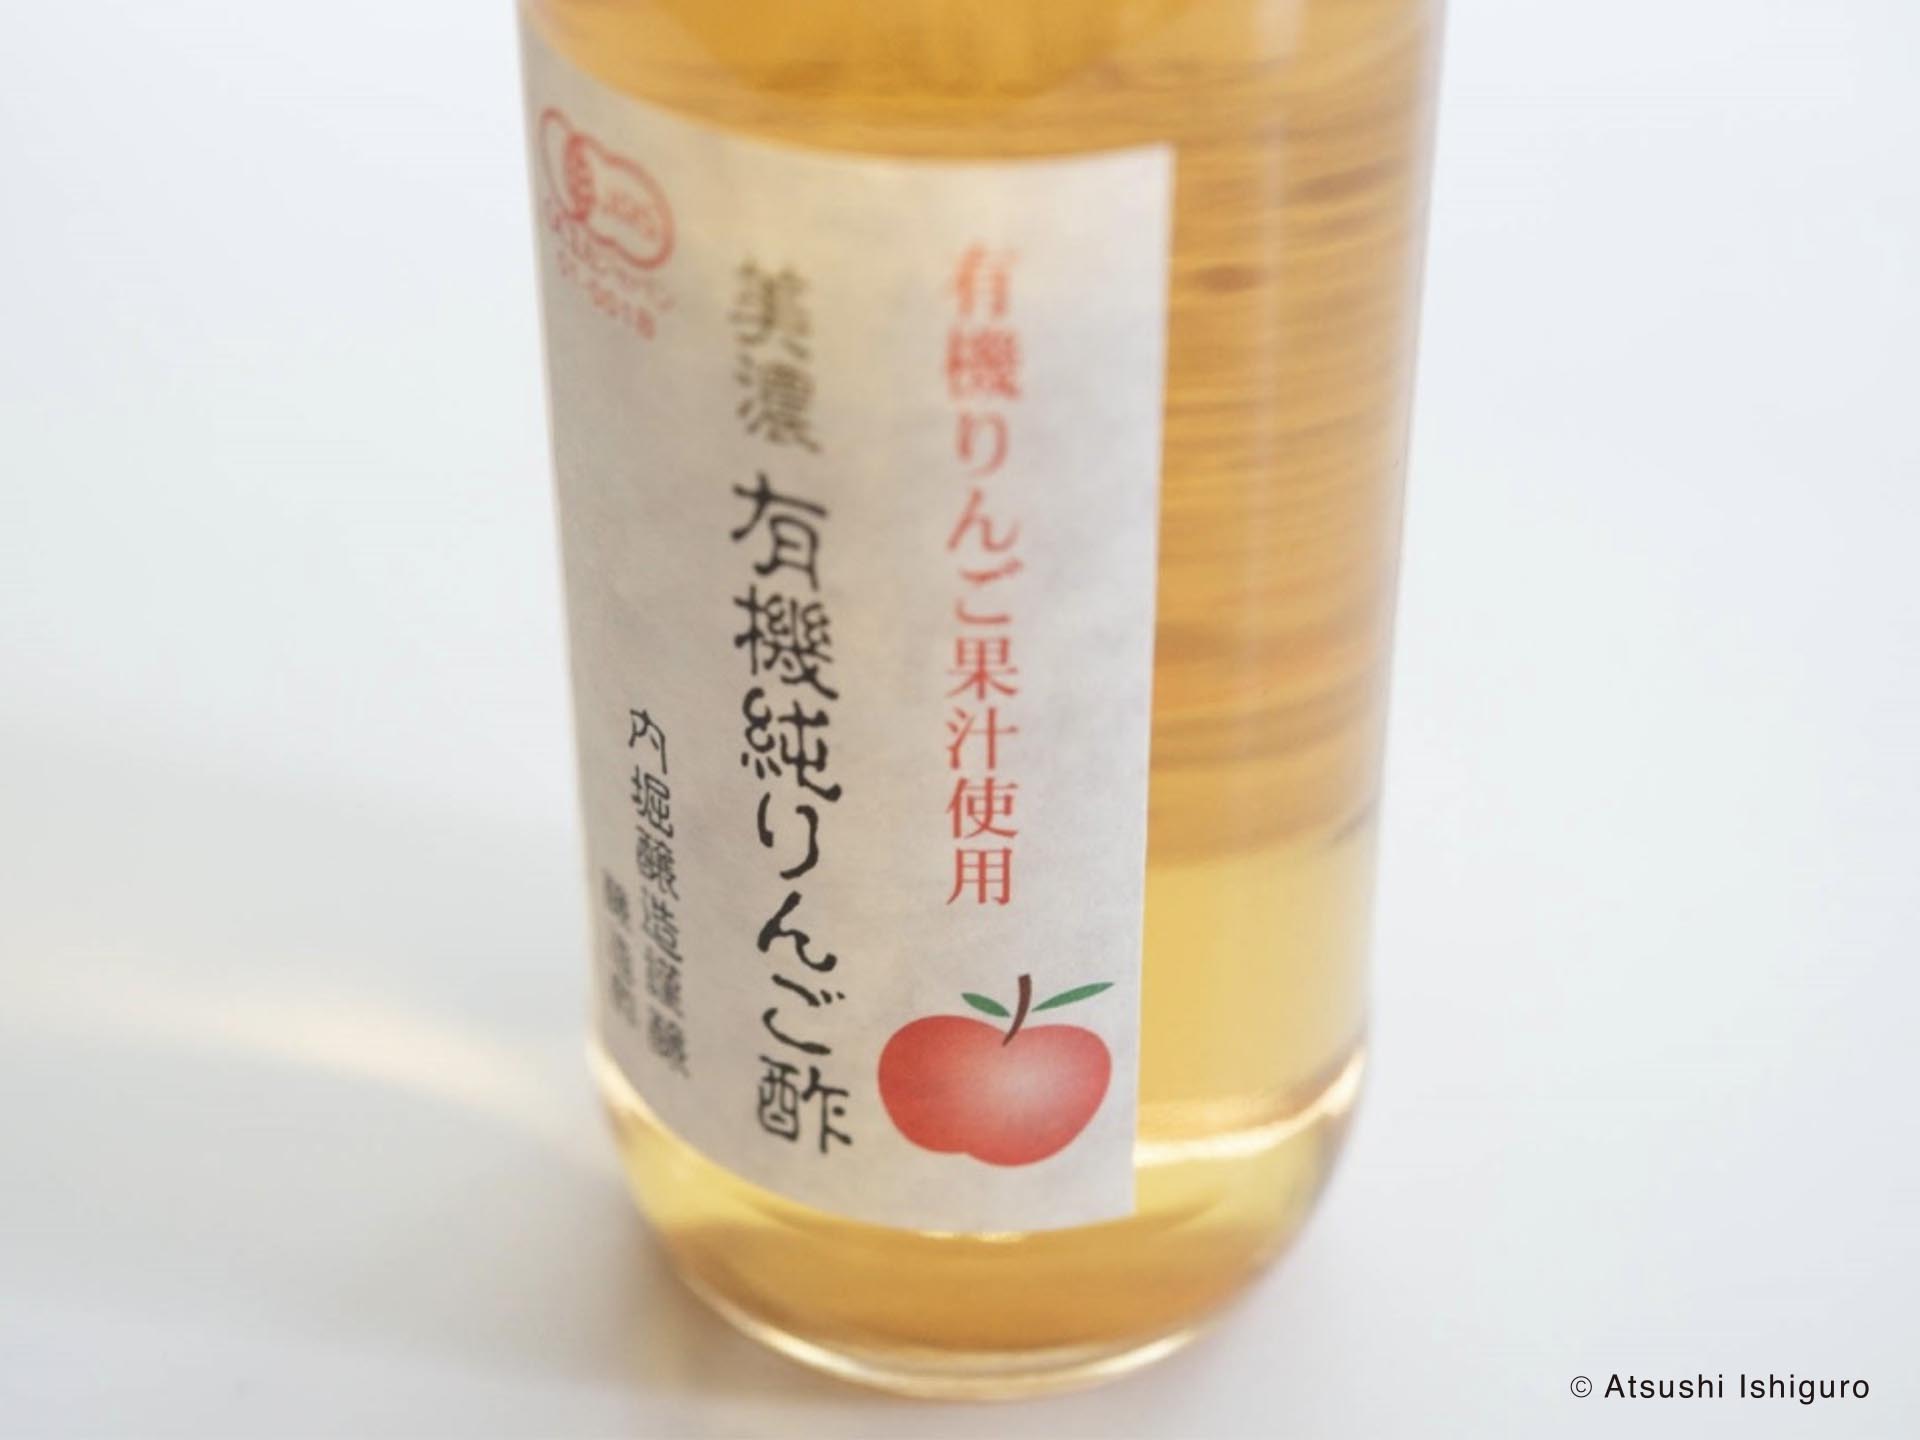 発酵調味料・リンゴ酢